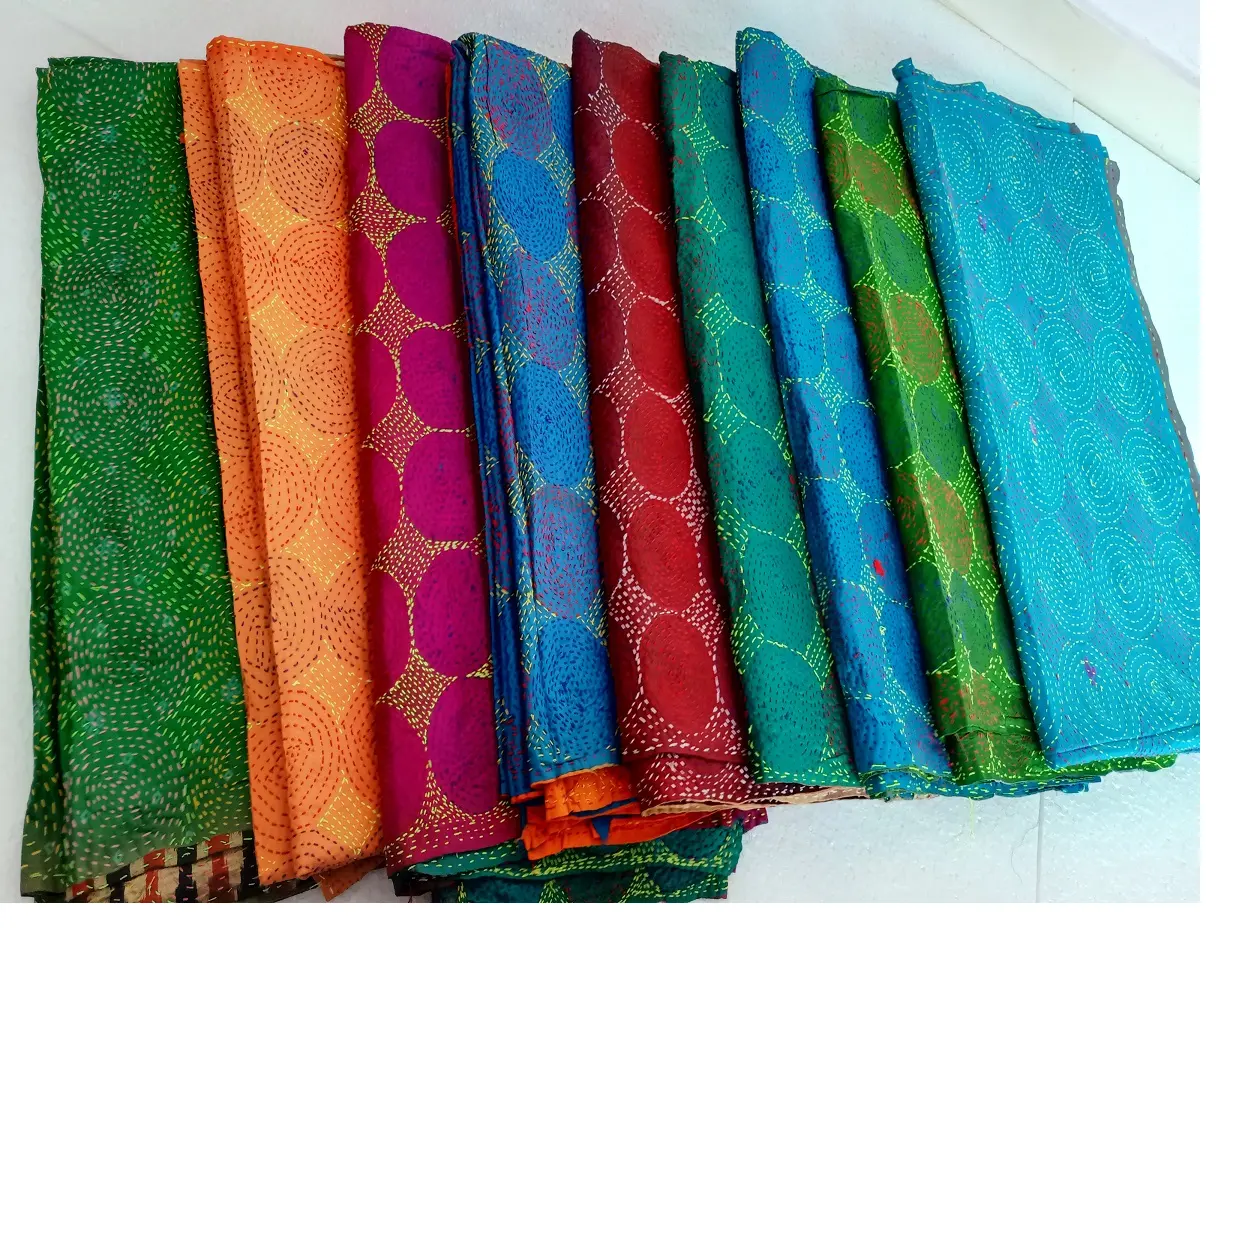 Kantha 스티치 작업 스카프 아름다운 밝은 색상으로 다양한 크기로 제공